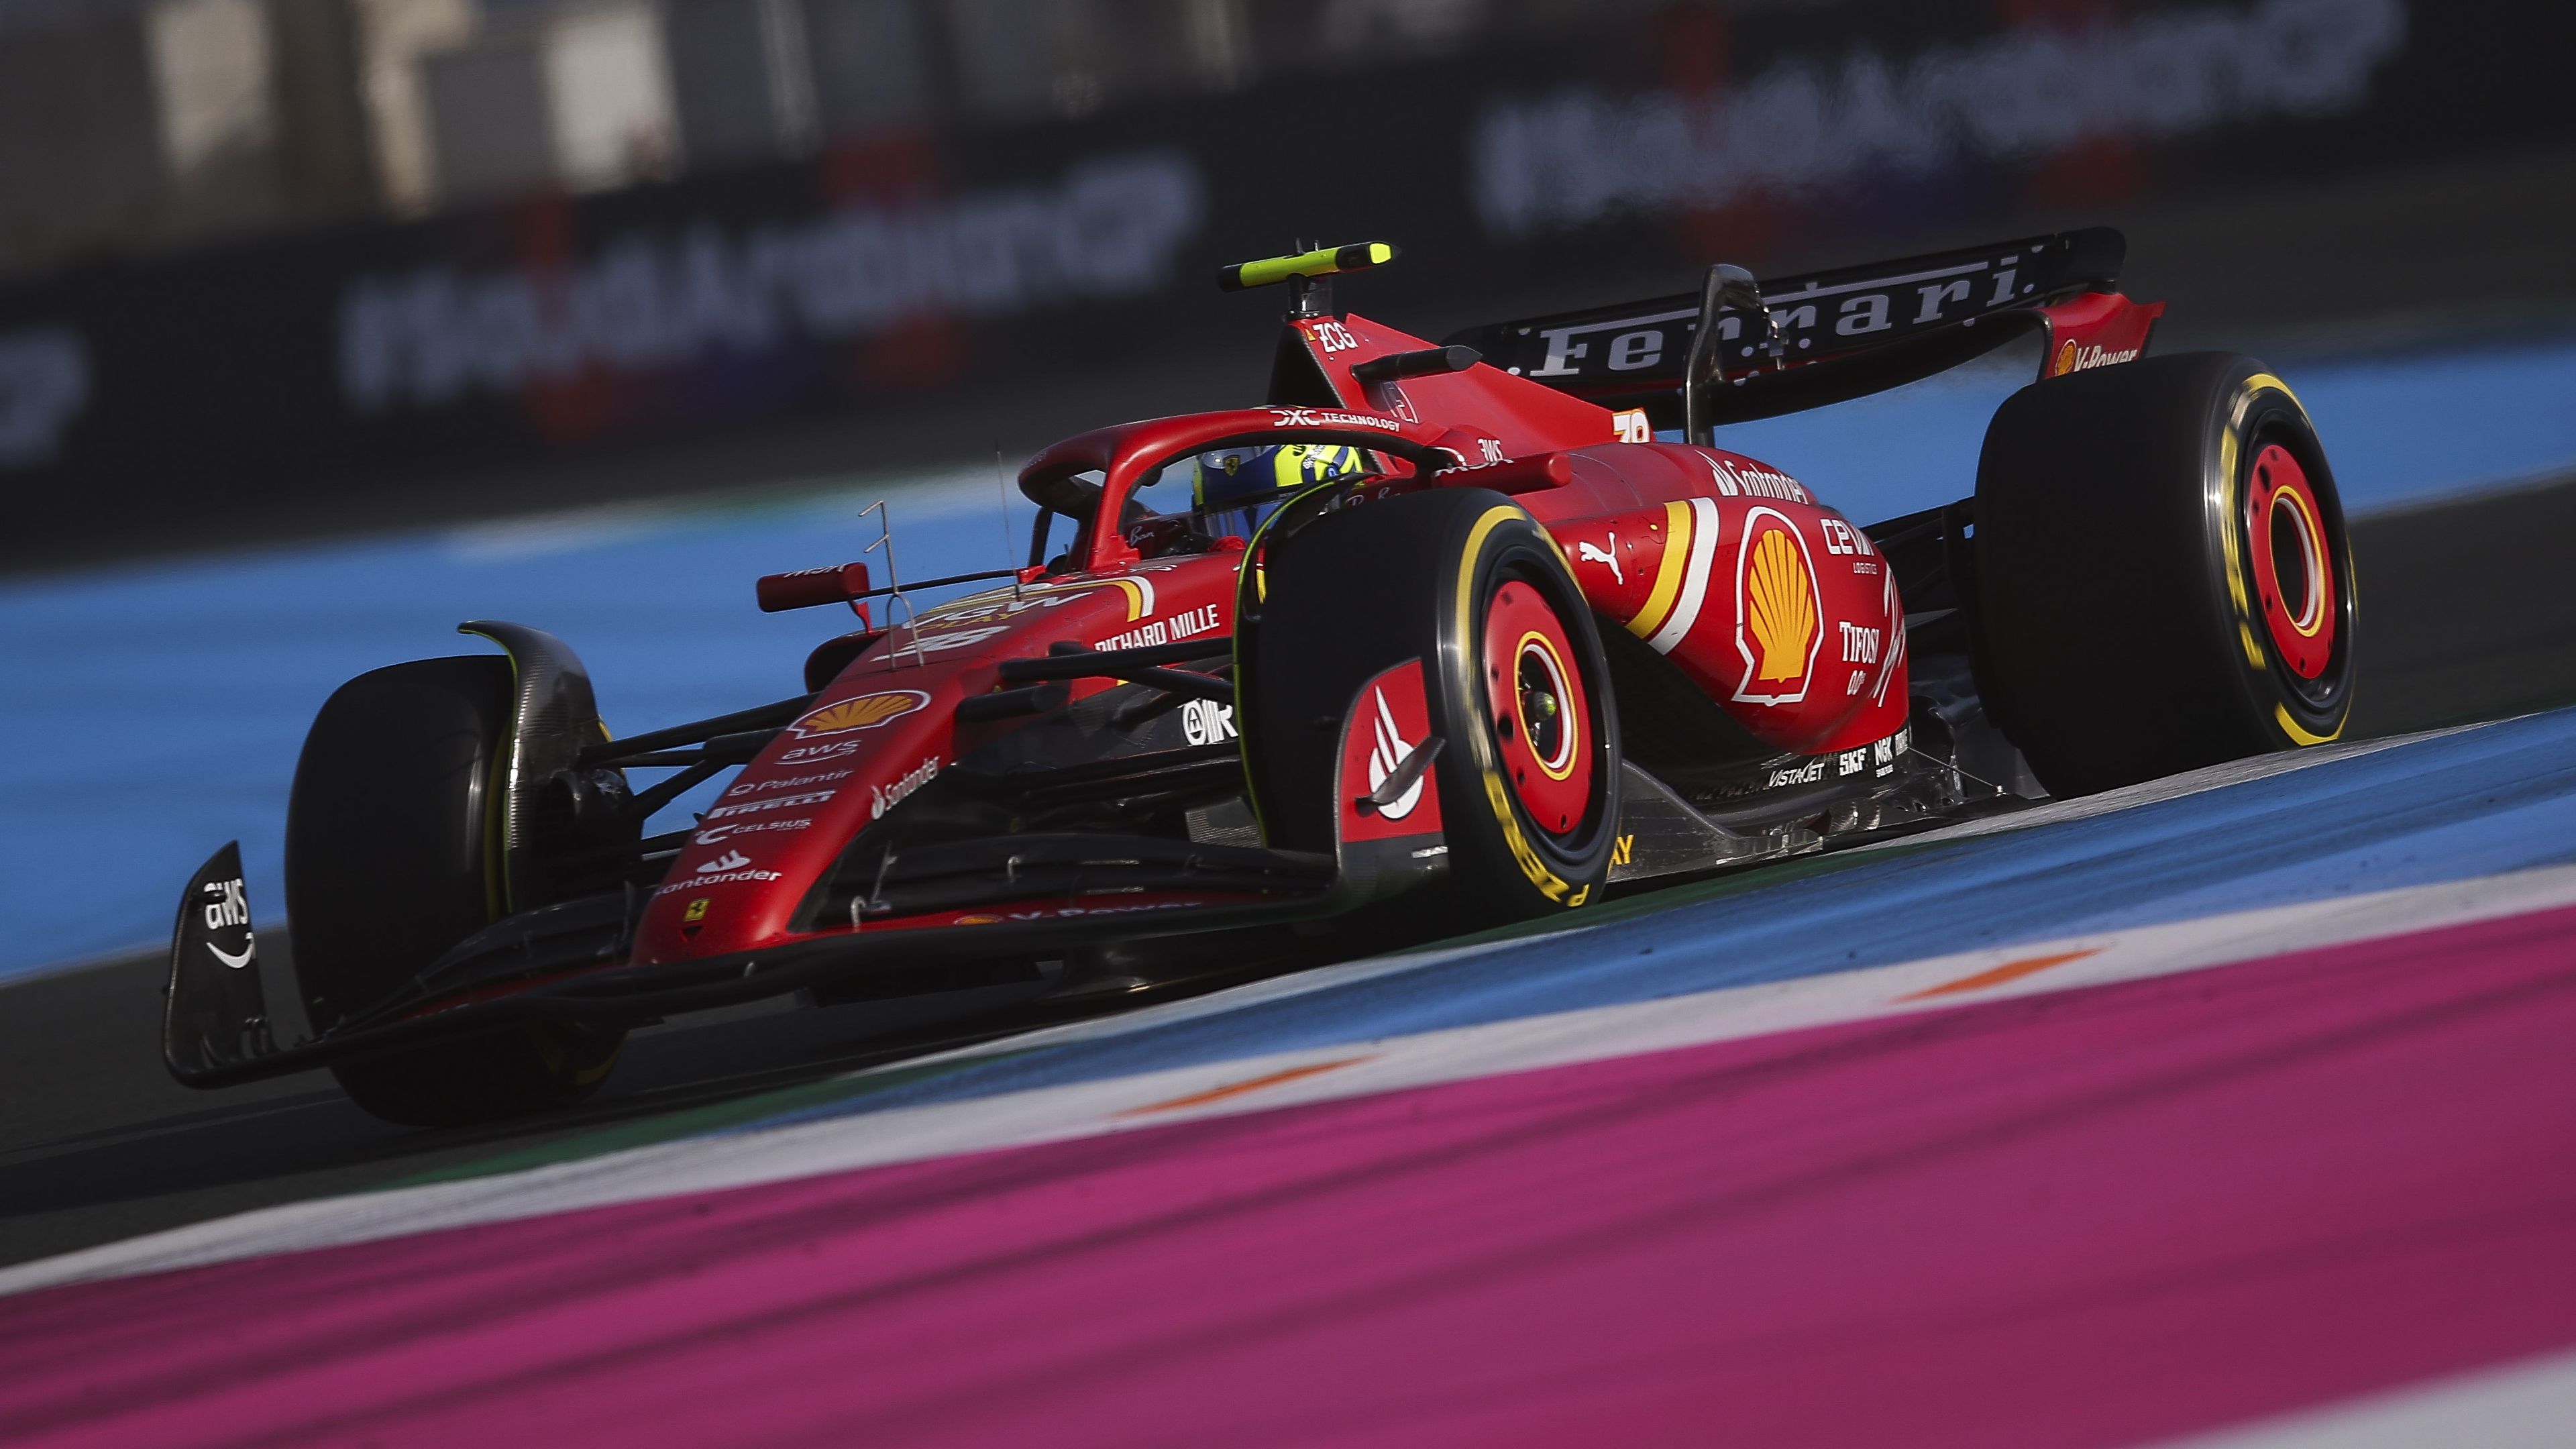 F1-hírek: bemutatkozott a Ferrari 18 éves versenyzője, Verstappené a harmadik szaúdi szabadedzés